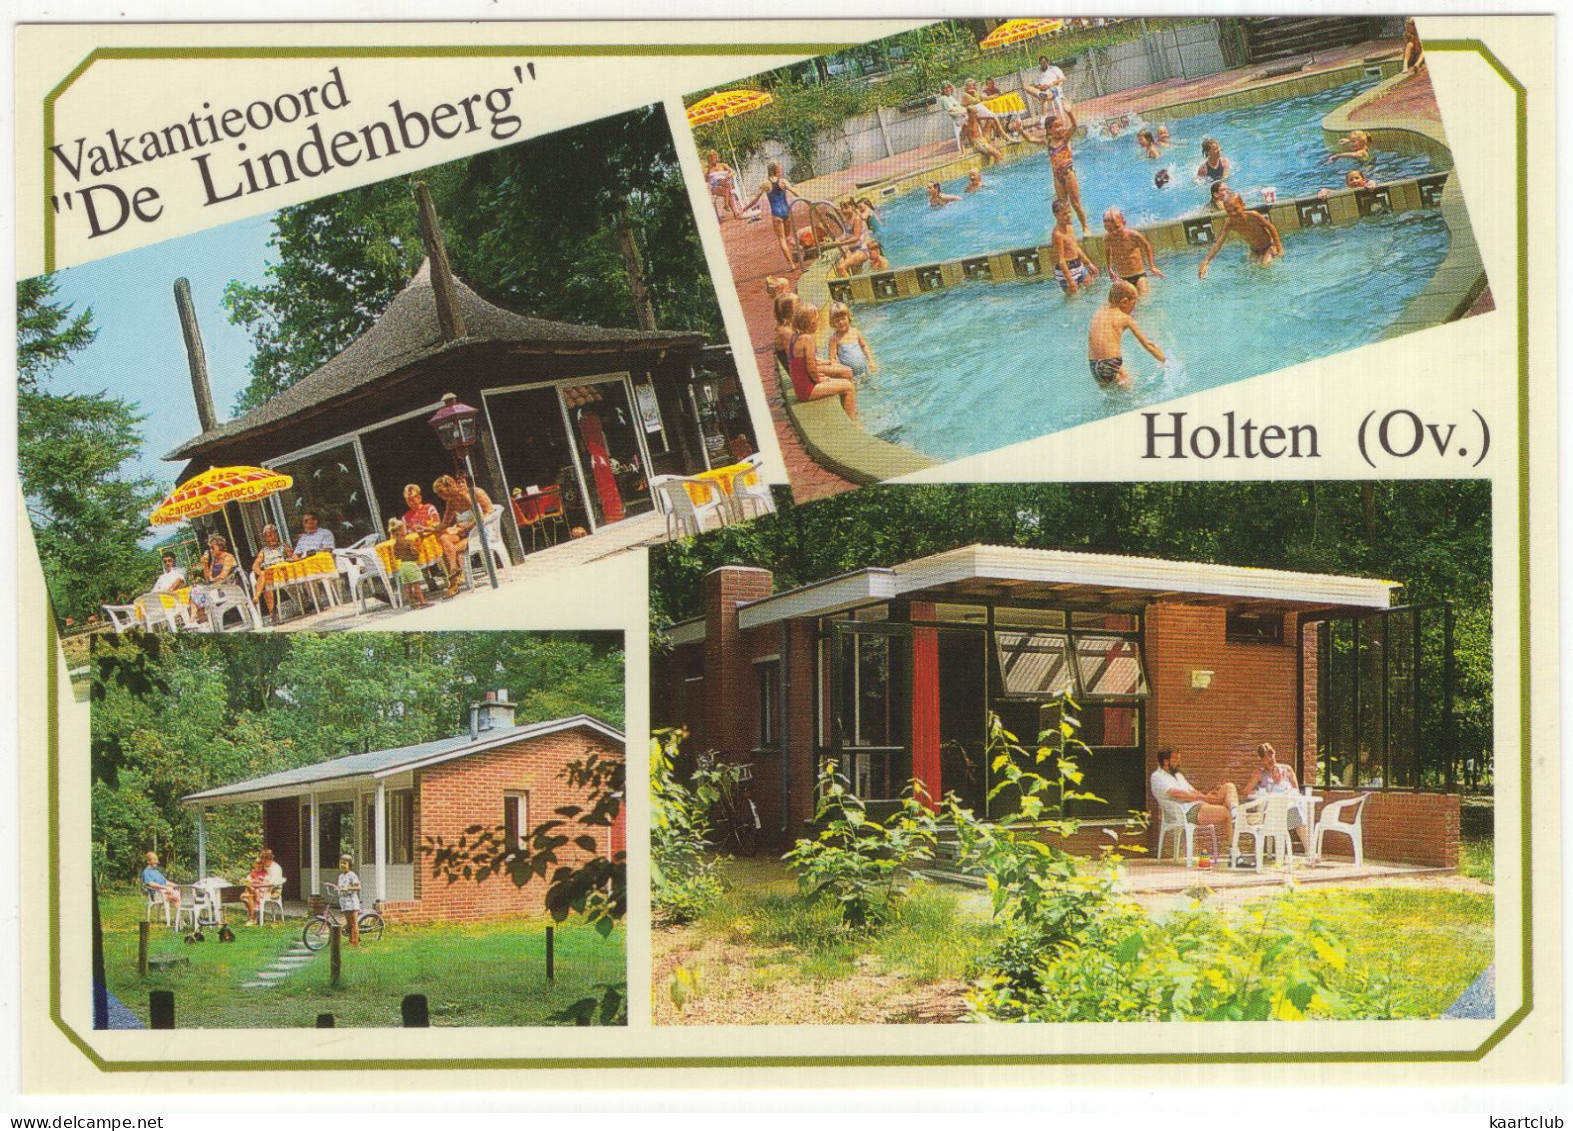 Holten (Ov.) - Vakantieoord 'De Lindenberg', Postweg 1 - (Nederland/Holland) - Bungalows, Zwembad, Terras - Holten